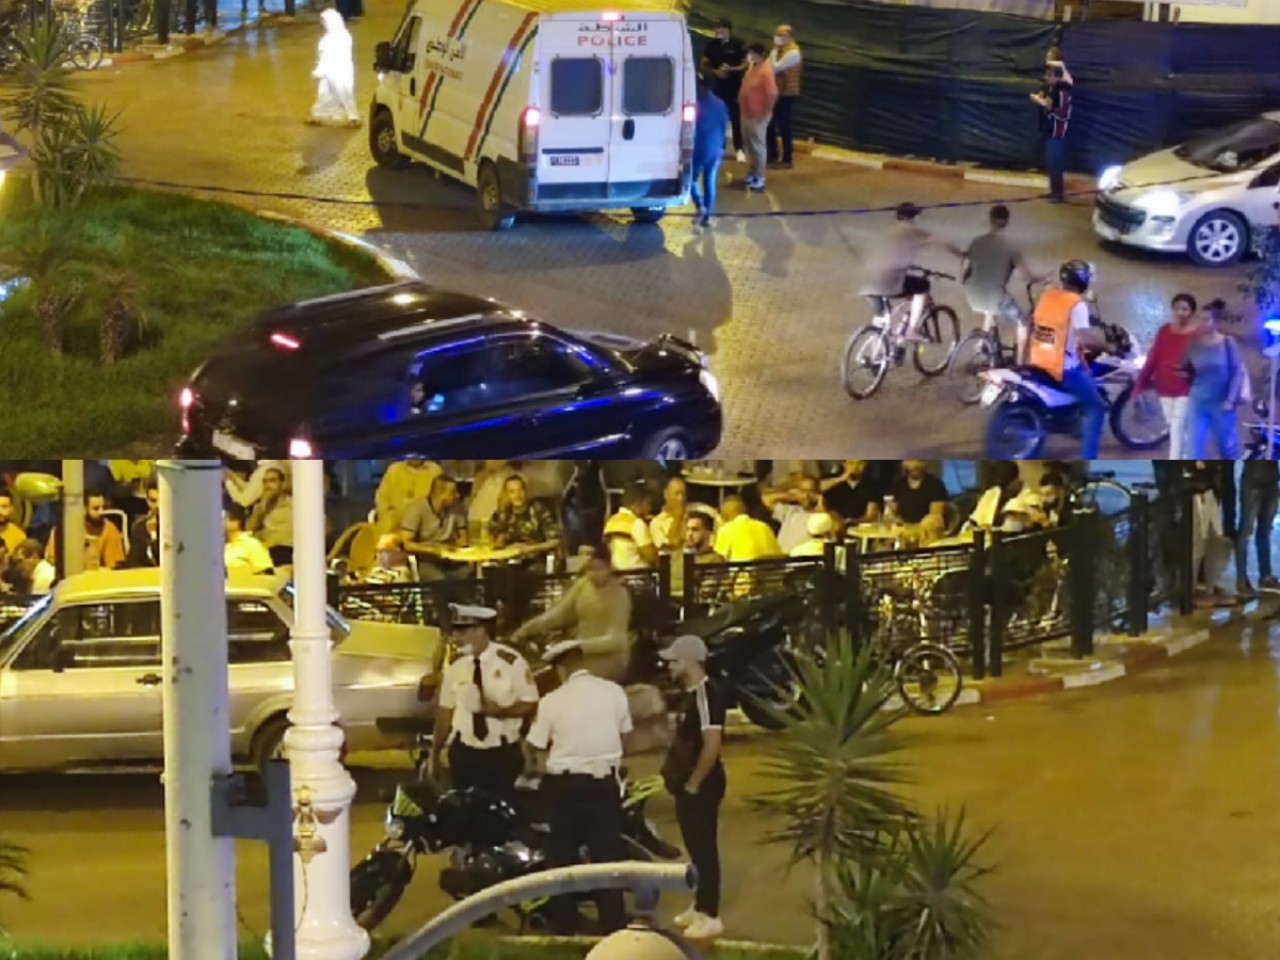 السلطات الأمنية بالقصر الكبير تشن حملة واسعة لمراقبة الدراجات النارية